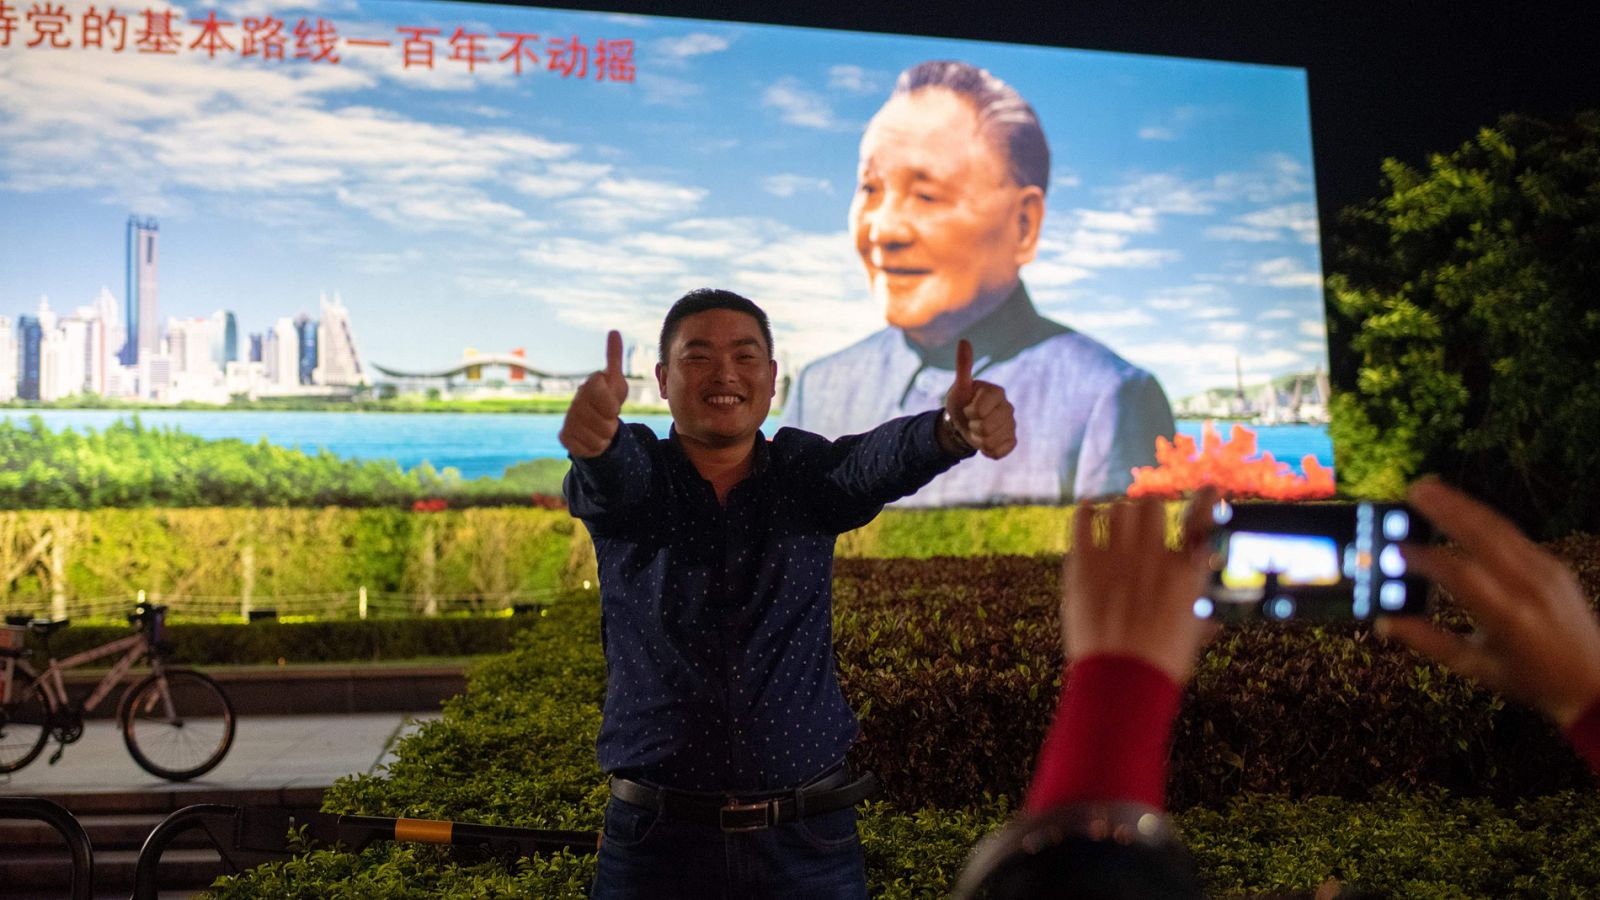 Un ciudadano chino posa junto a un cartel con la imagen de Deng Xiaoping en Shenzhen, China